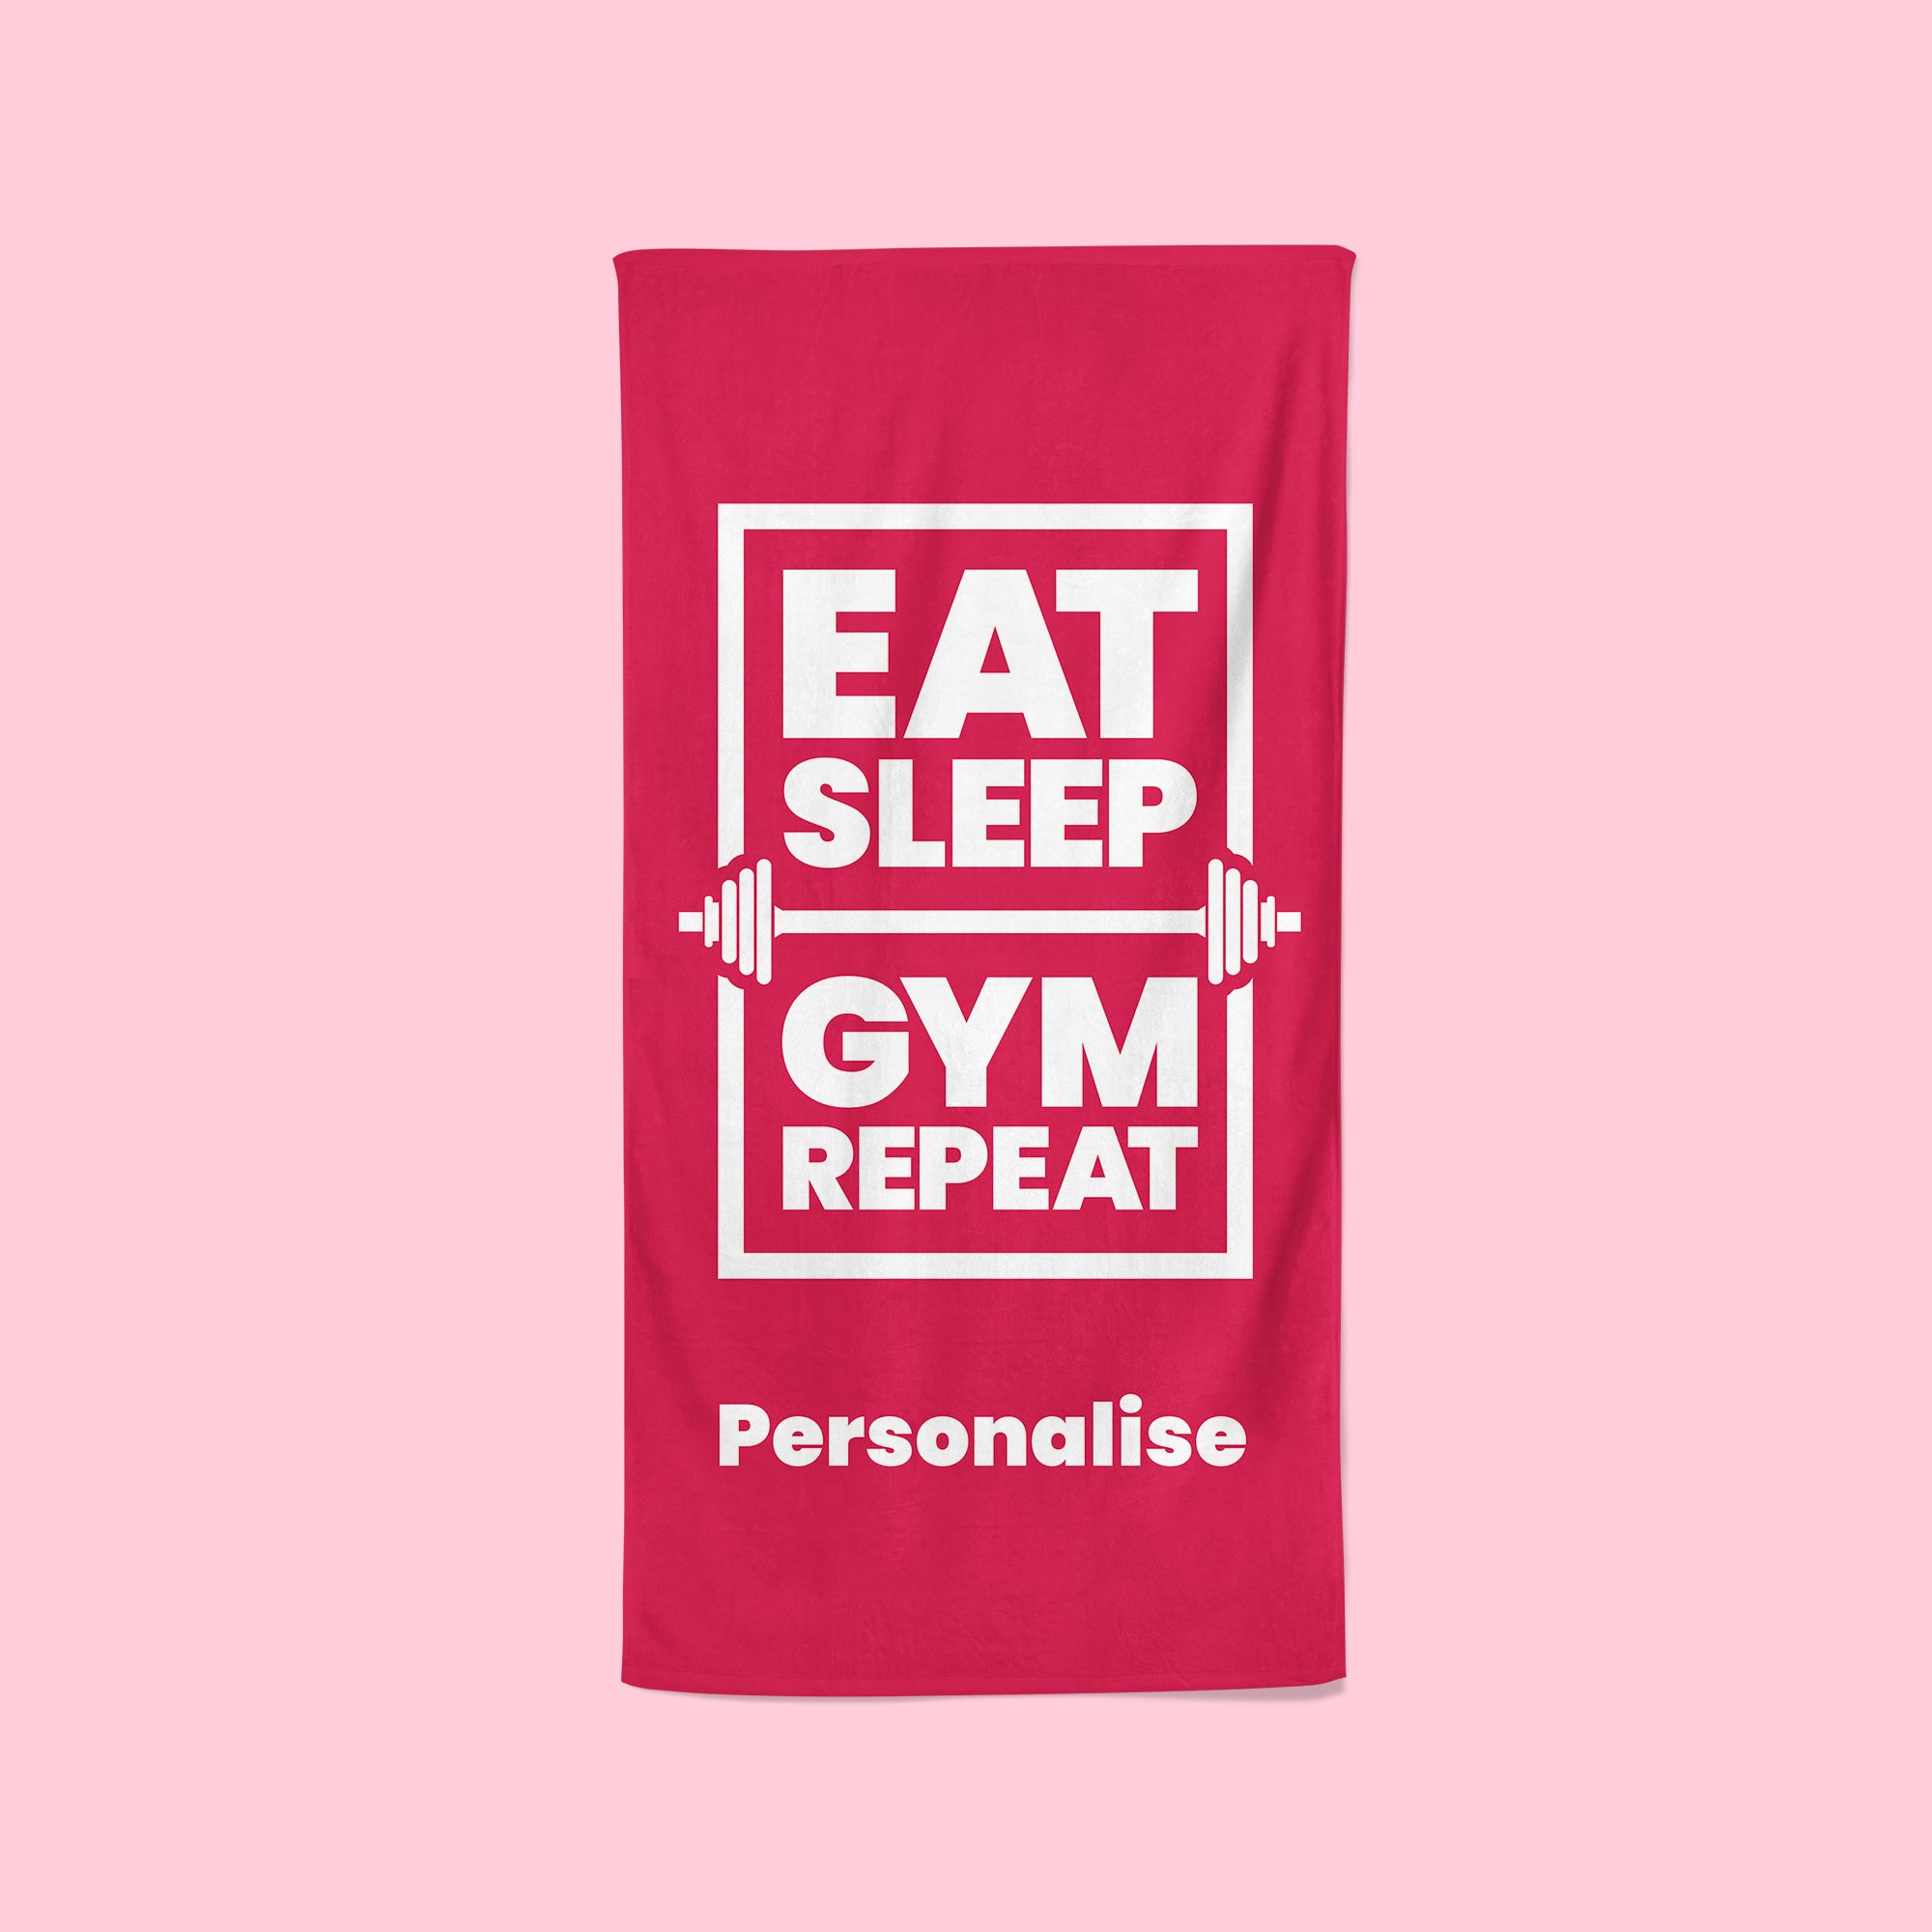 Personalised Pink Gym Towel - Eat, Sleep, Gym, Repeat!